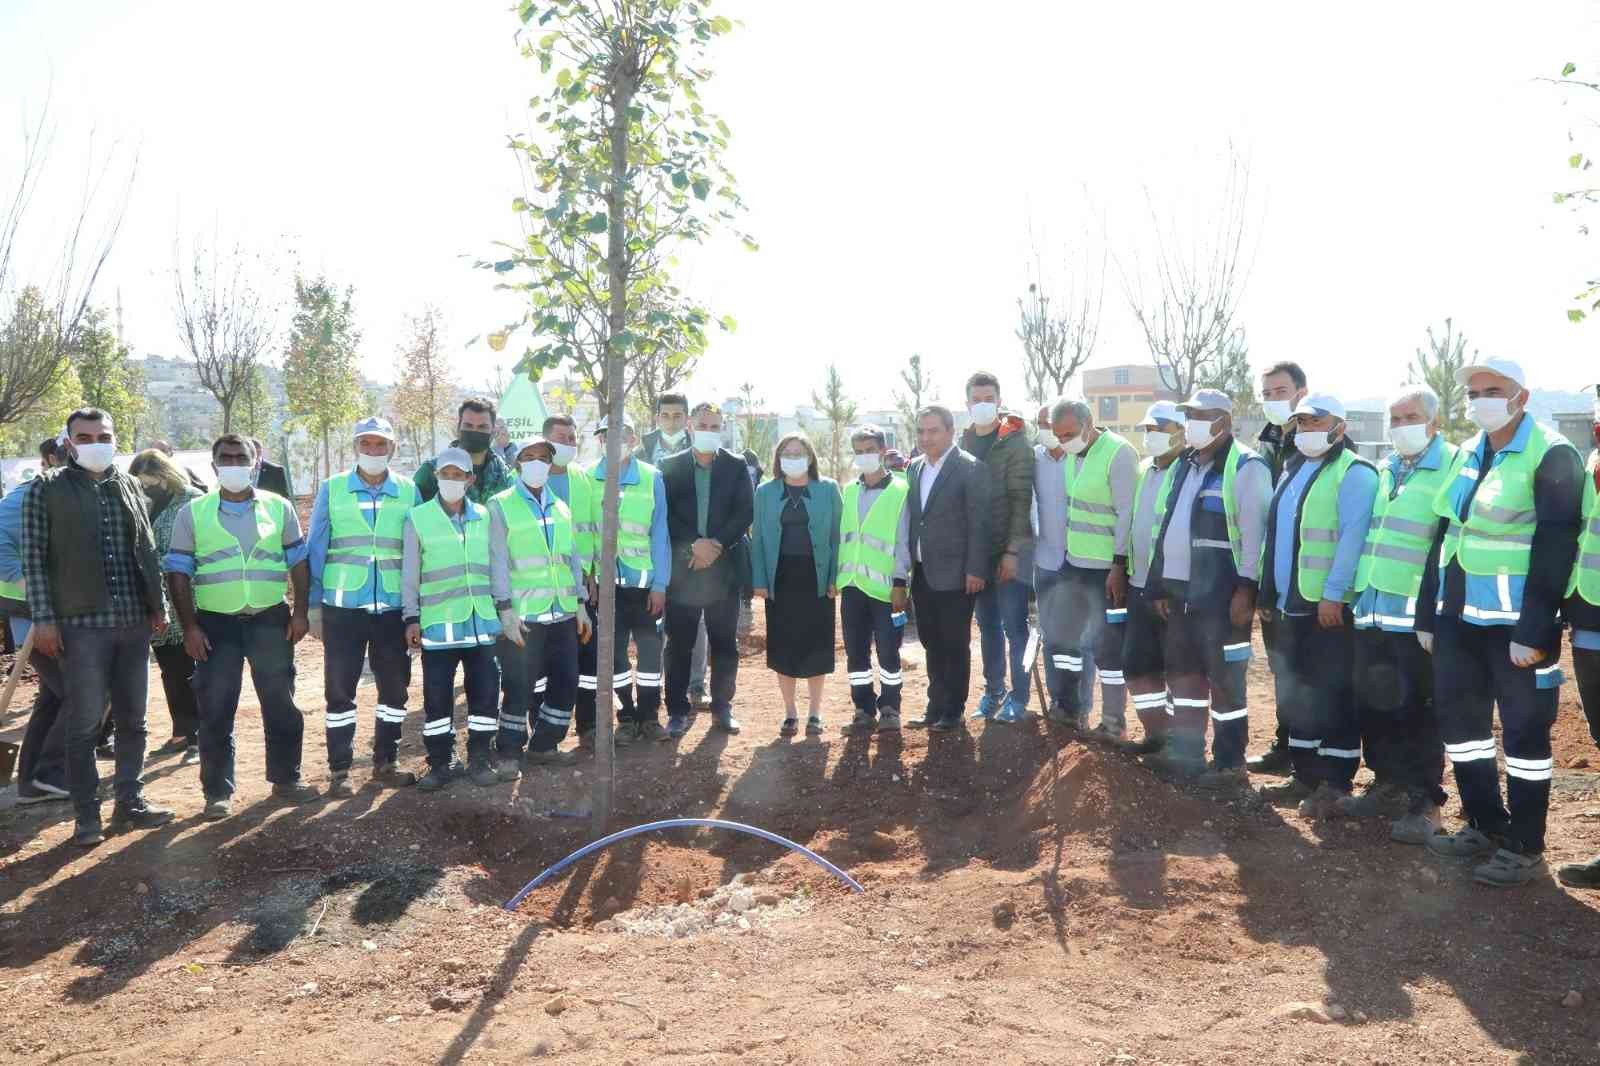 Gaziantep’te 27 milyon fidan hedefi için ağaç dikim başladı #gaziantep